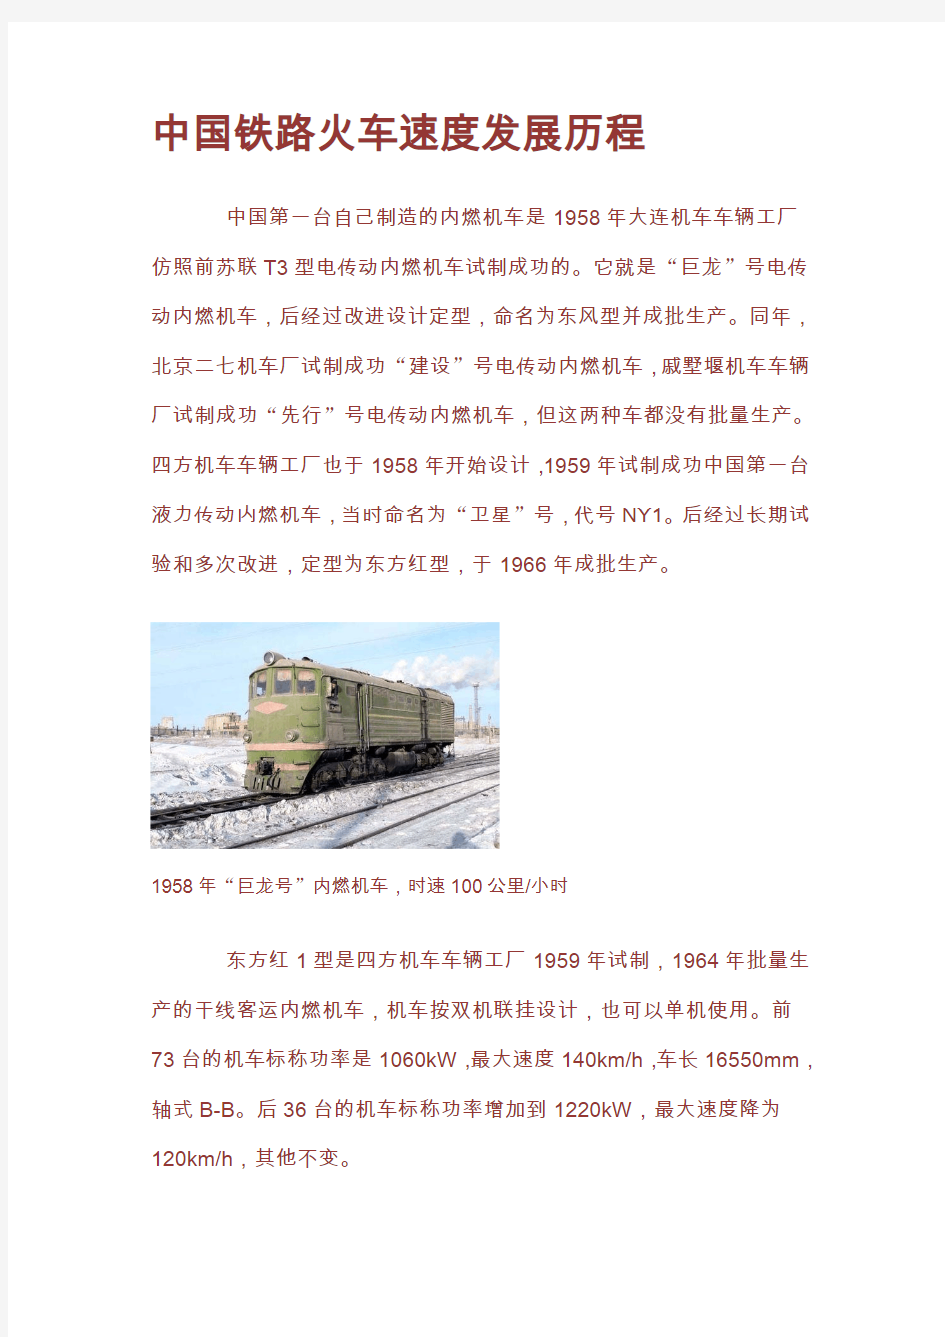 中国铁路火车速度发展历程